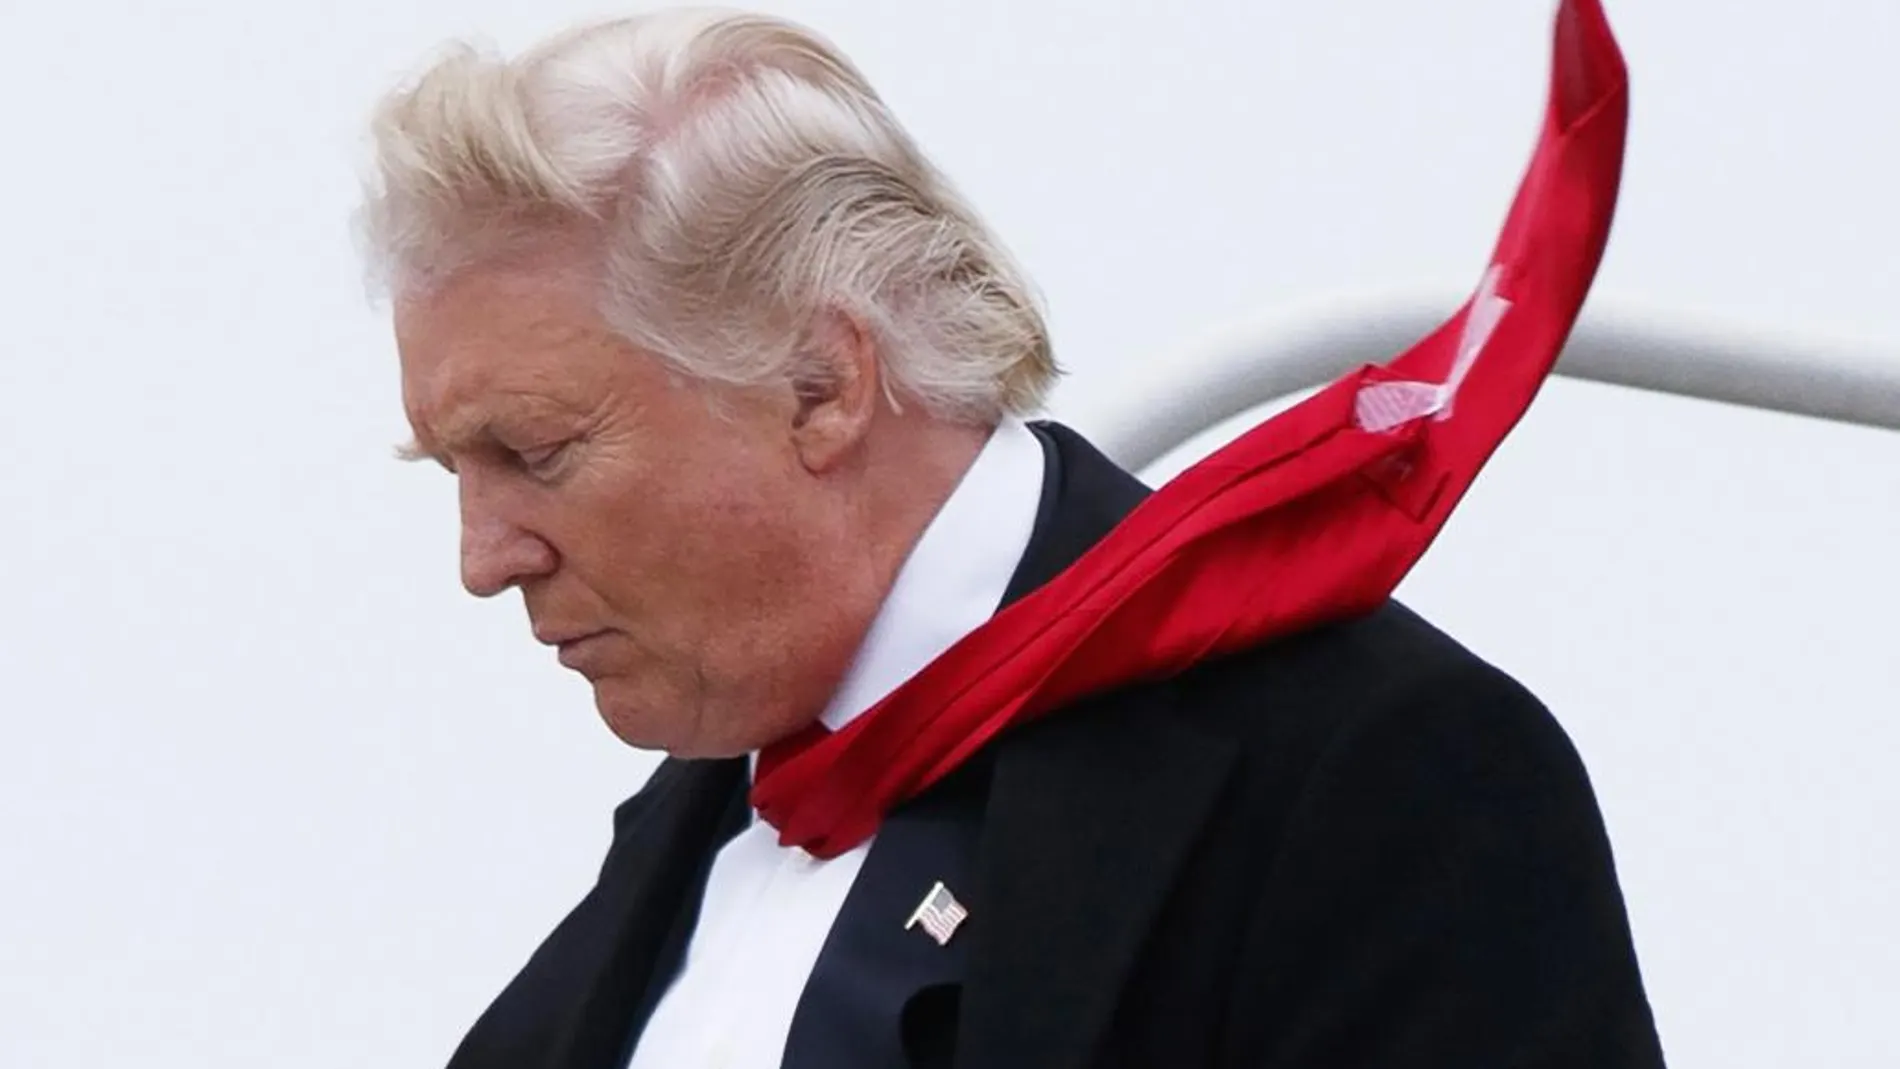 Para evitar que las palas de su corbata se abran, Trump recurre a un truco de andar por casa